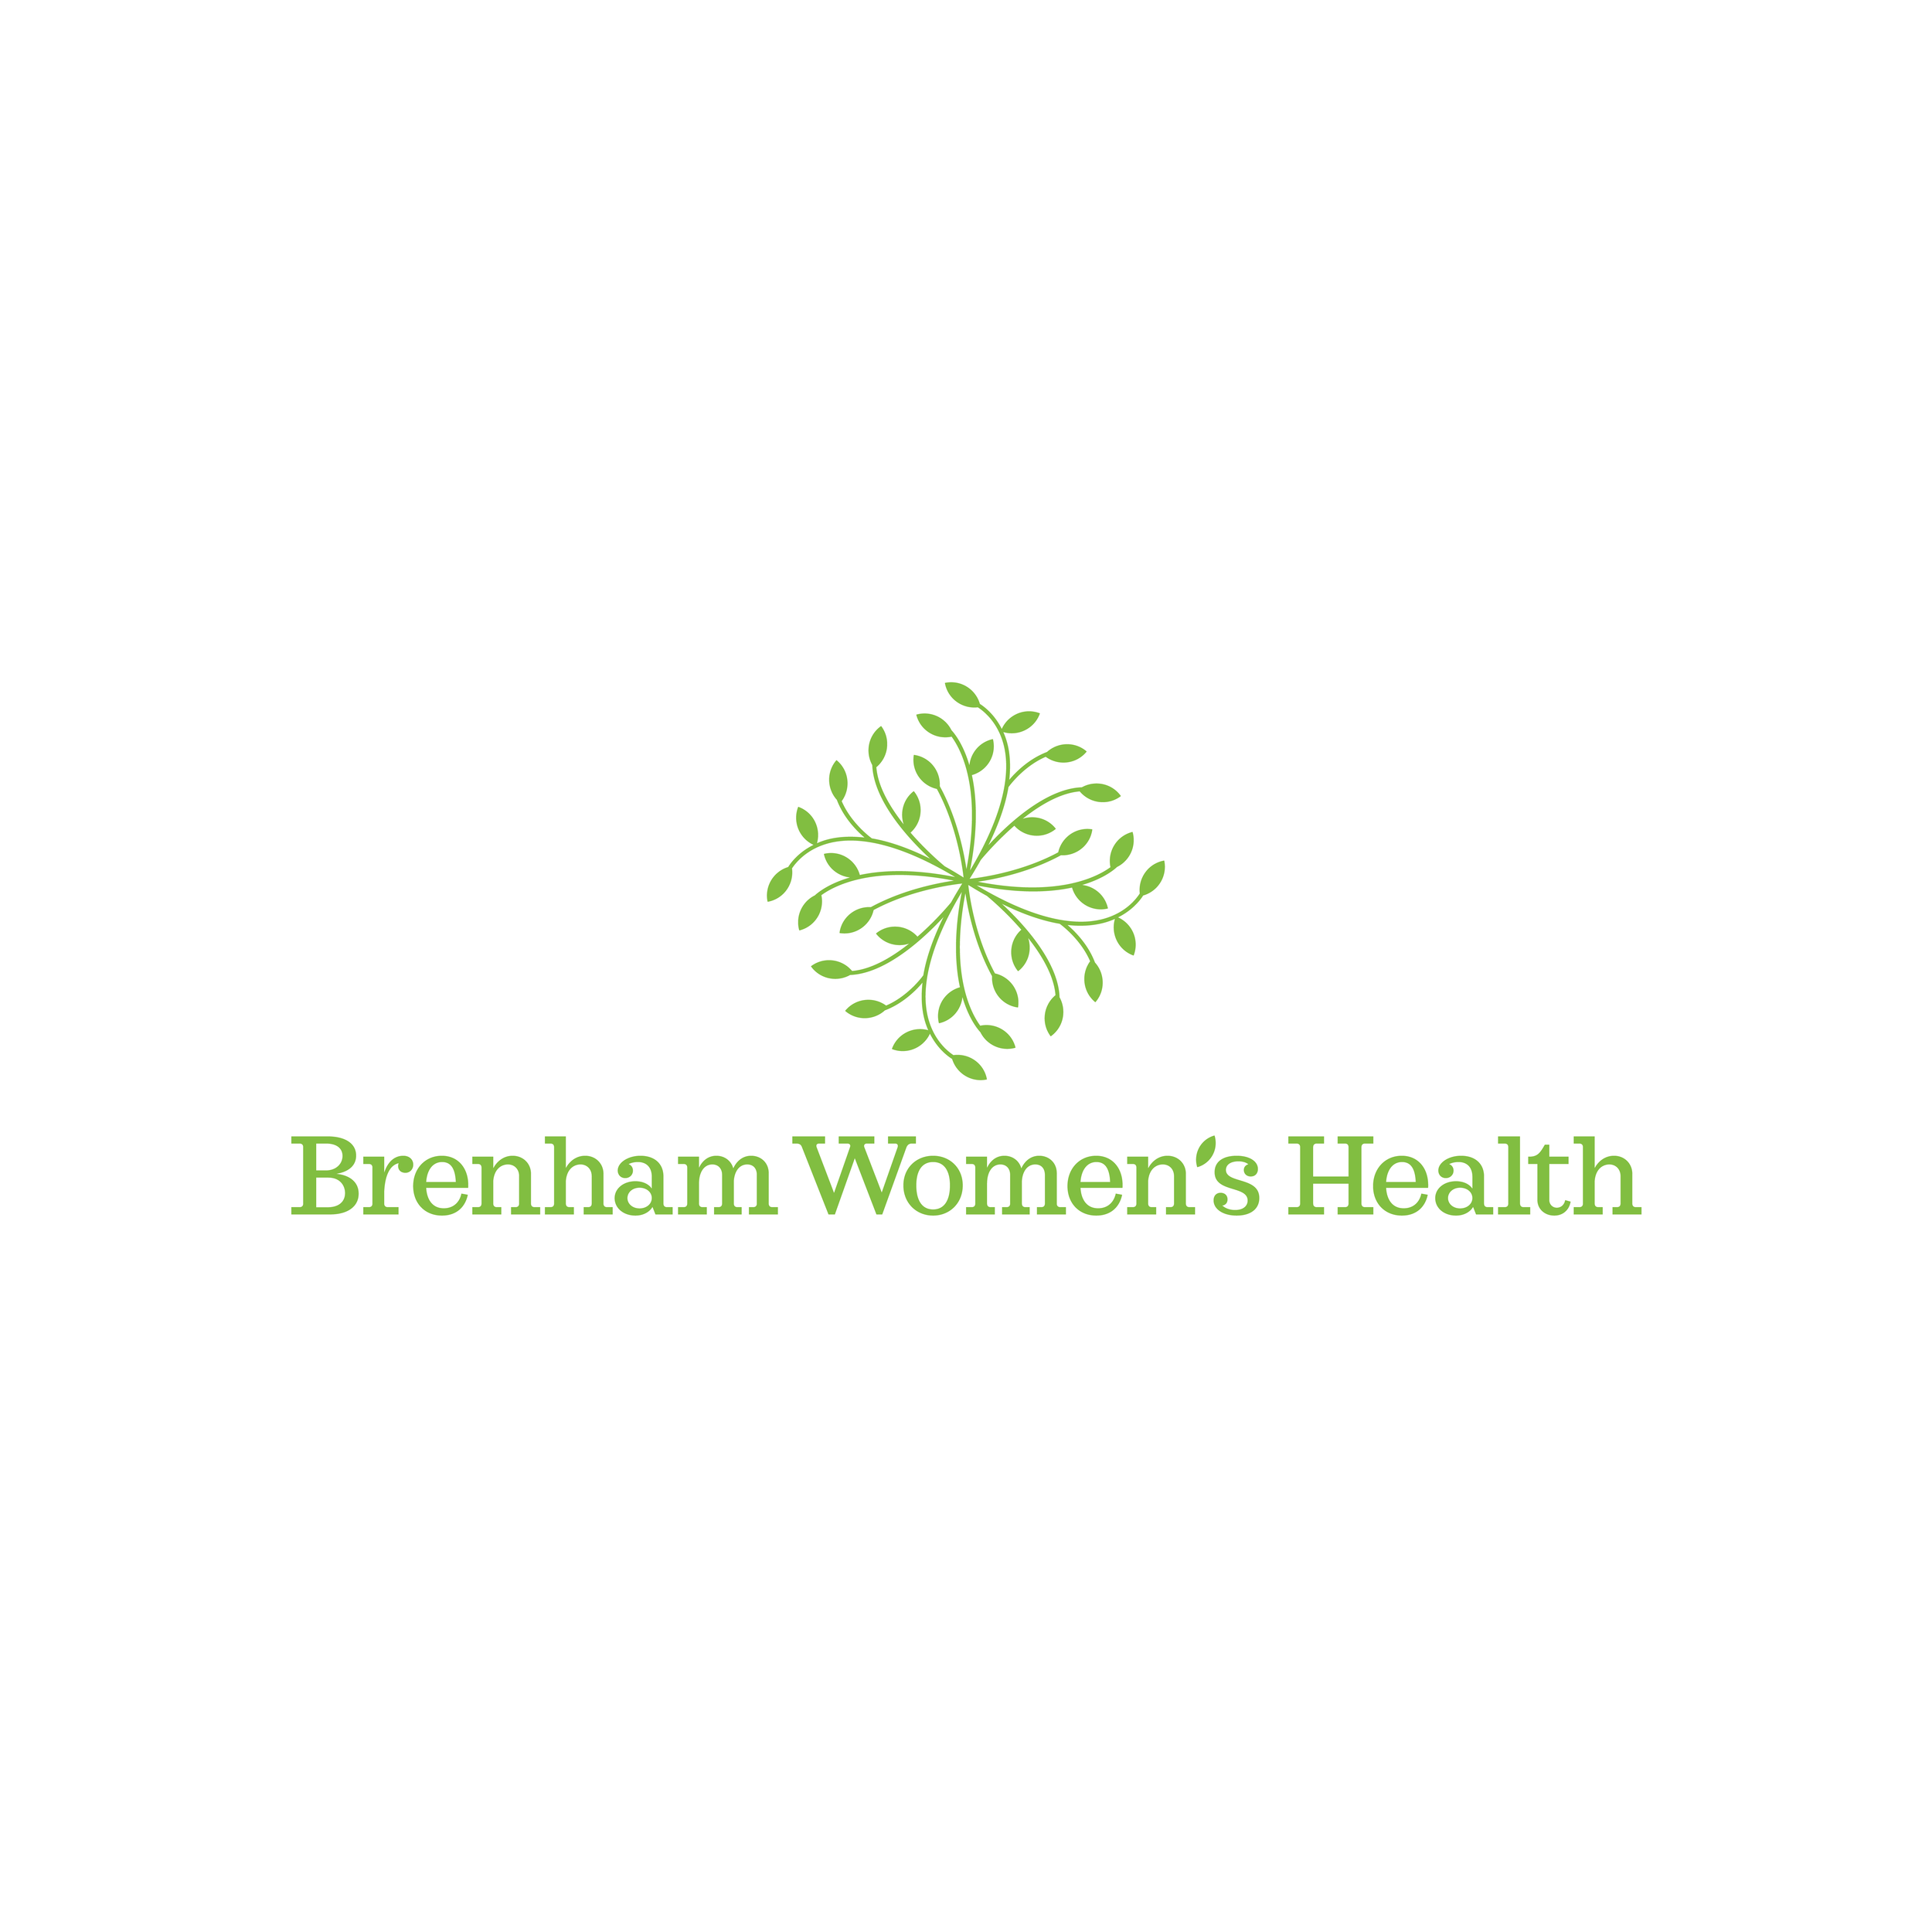 BrenhamWomensHealth_logo.png